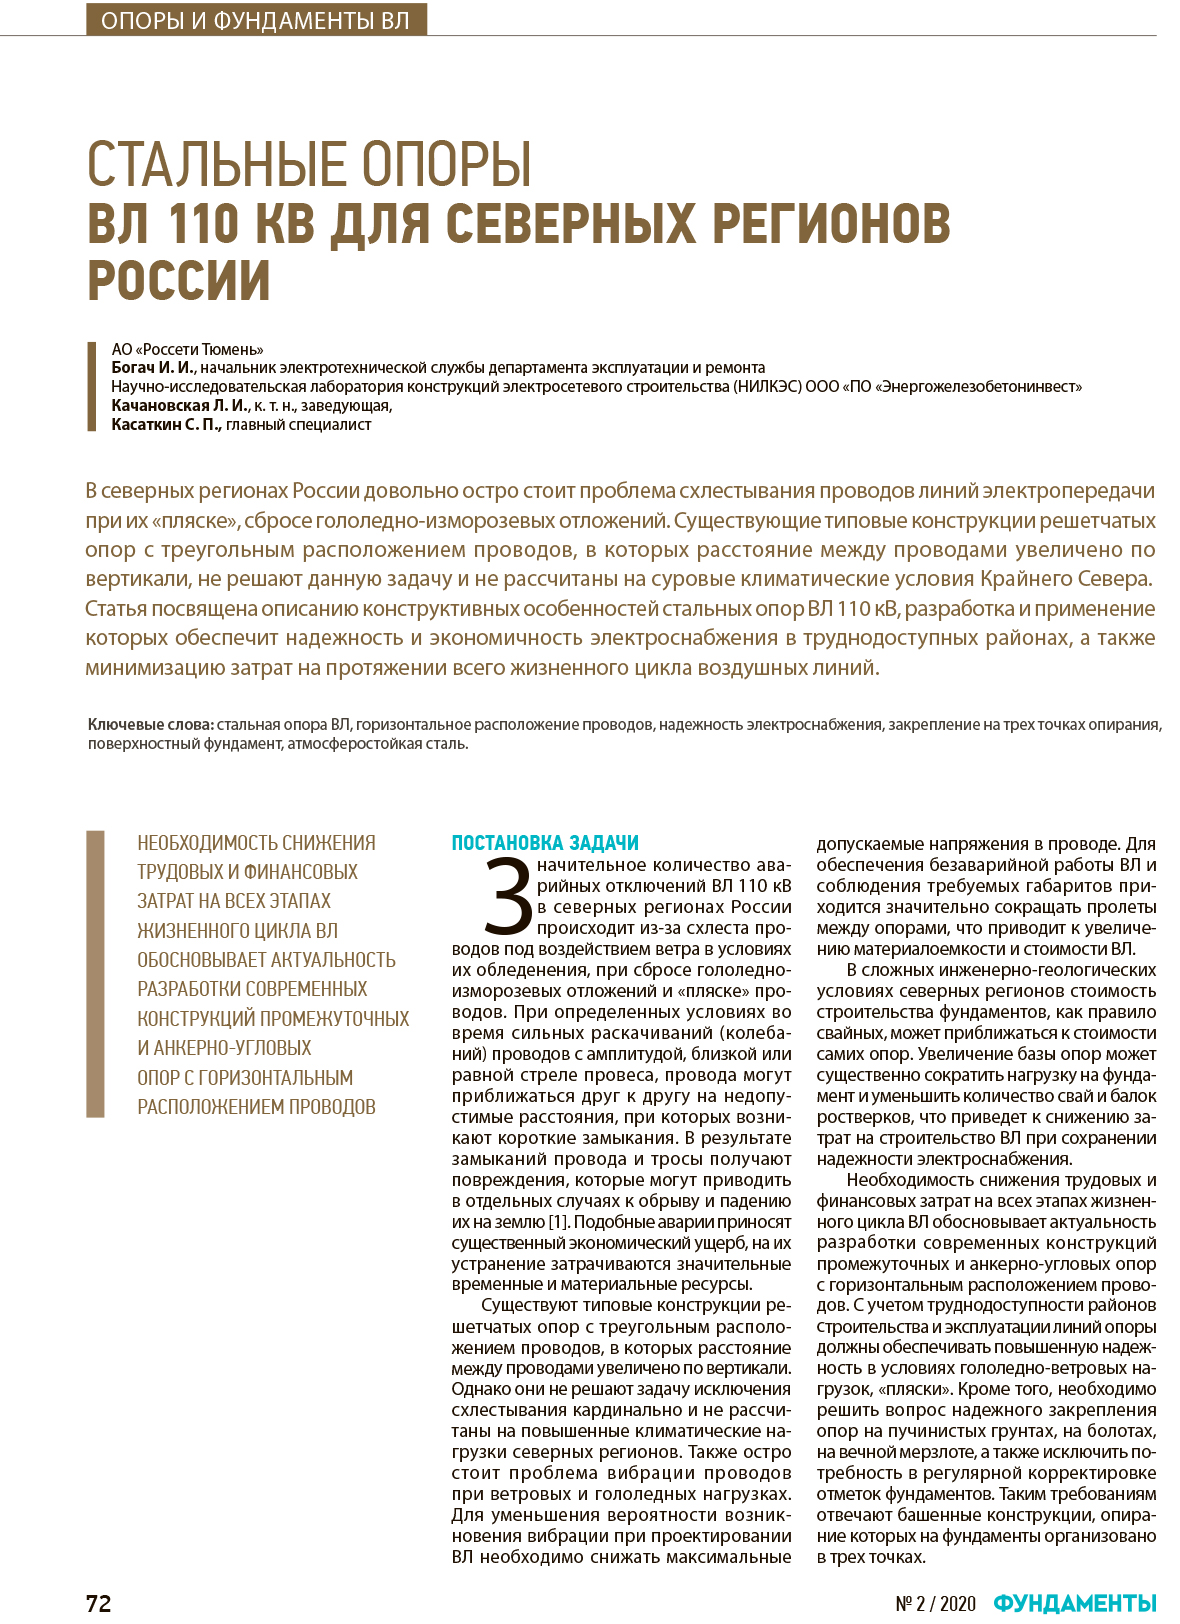 Стальные опоры ВЛ 110 кВ для Северных регионов России